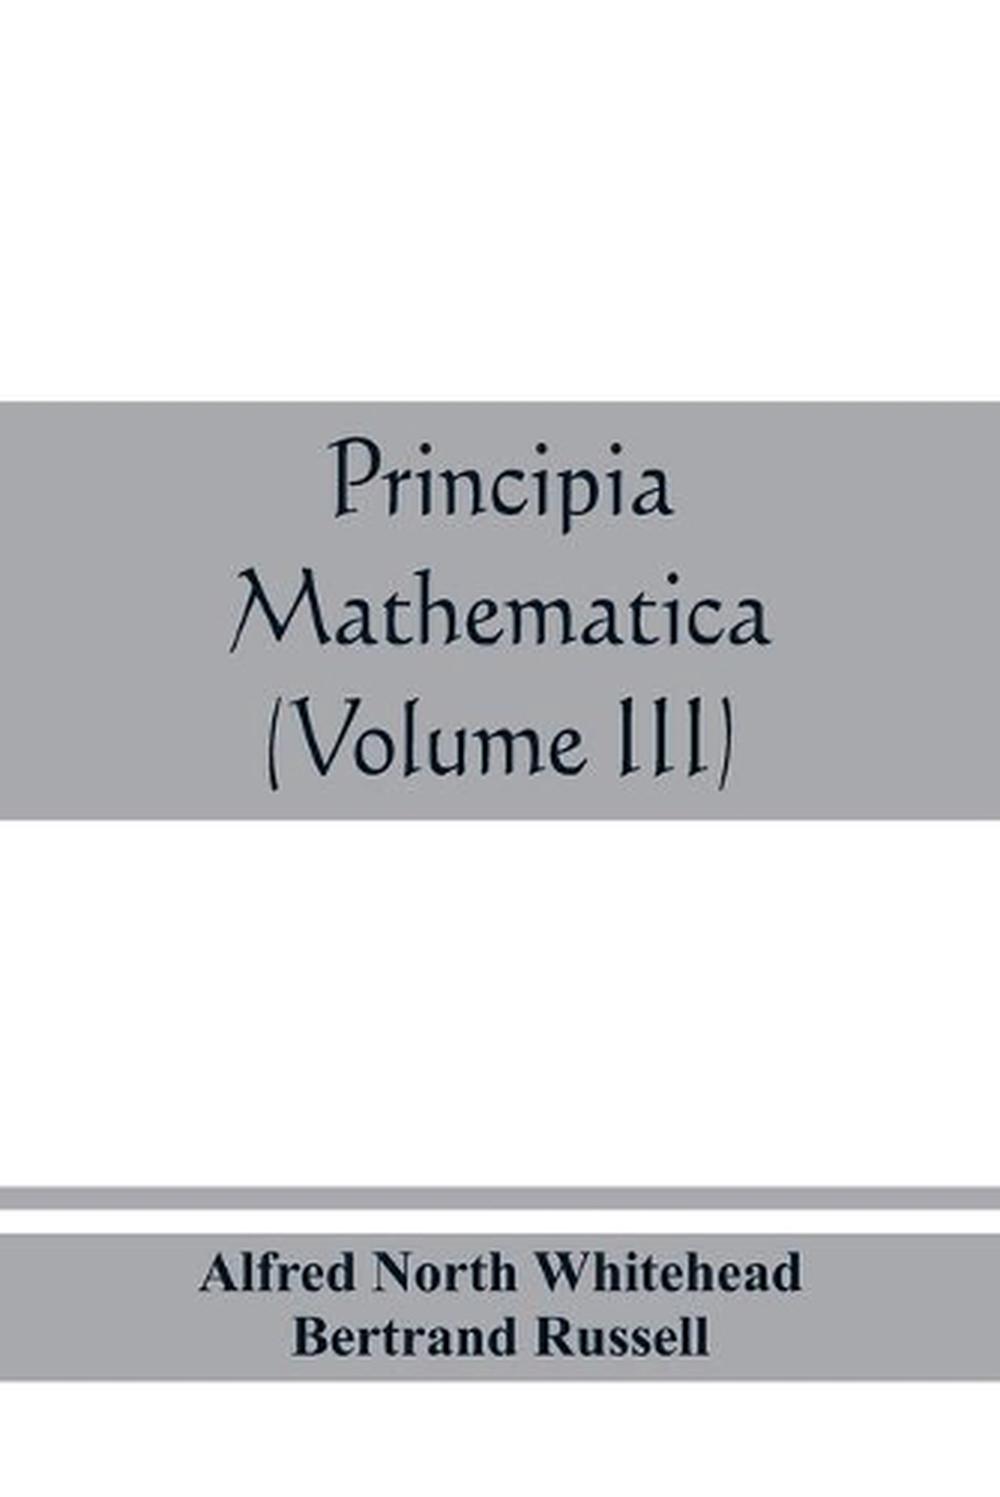 principia mathematica pdf free download